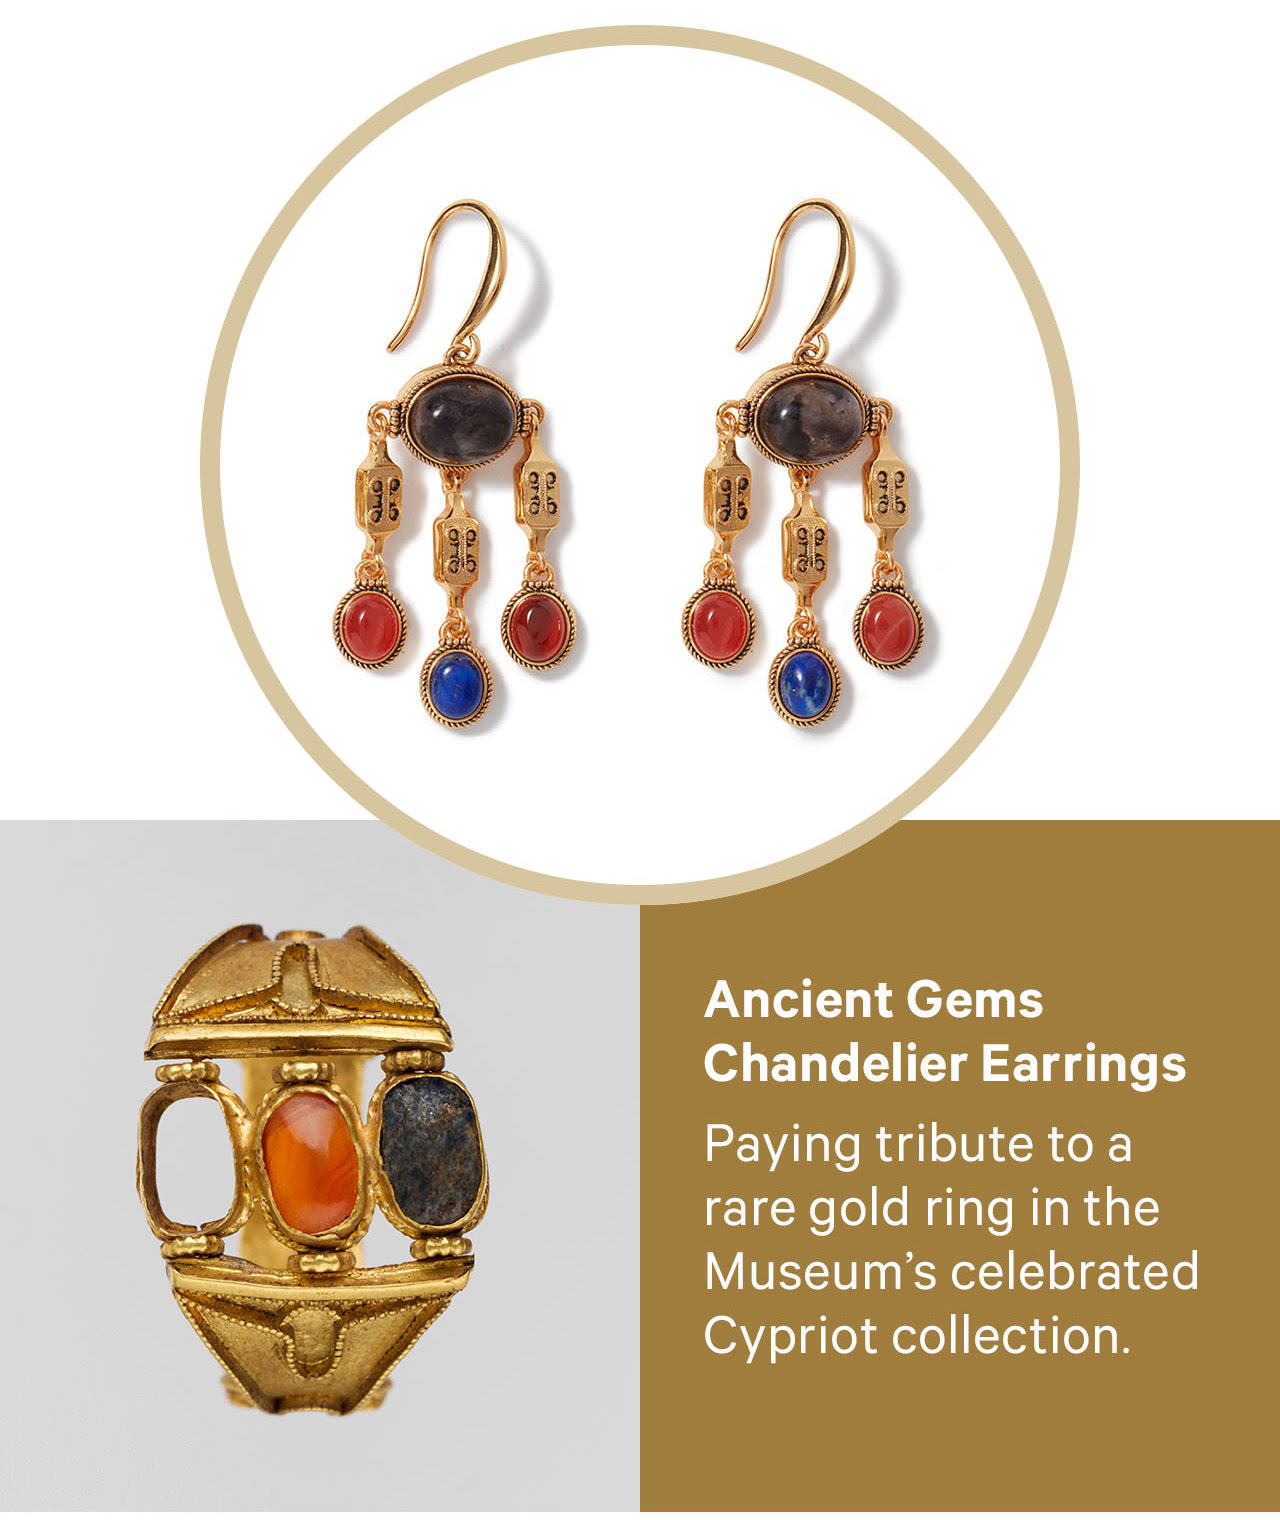 Brincos lustre de joias antigas |  Em homenagem a um anel de ouro raro da coleção cipriota do museu.